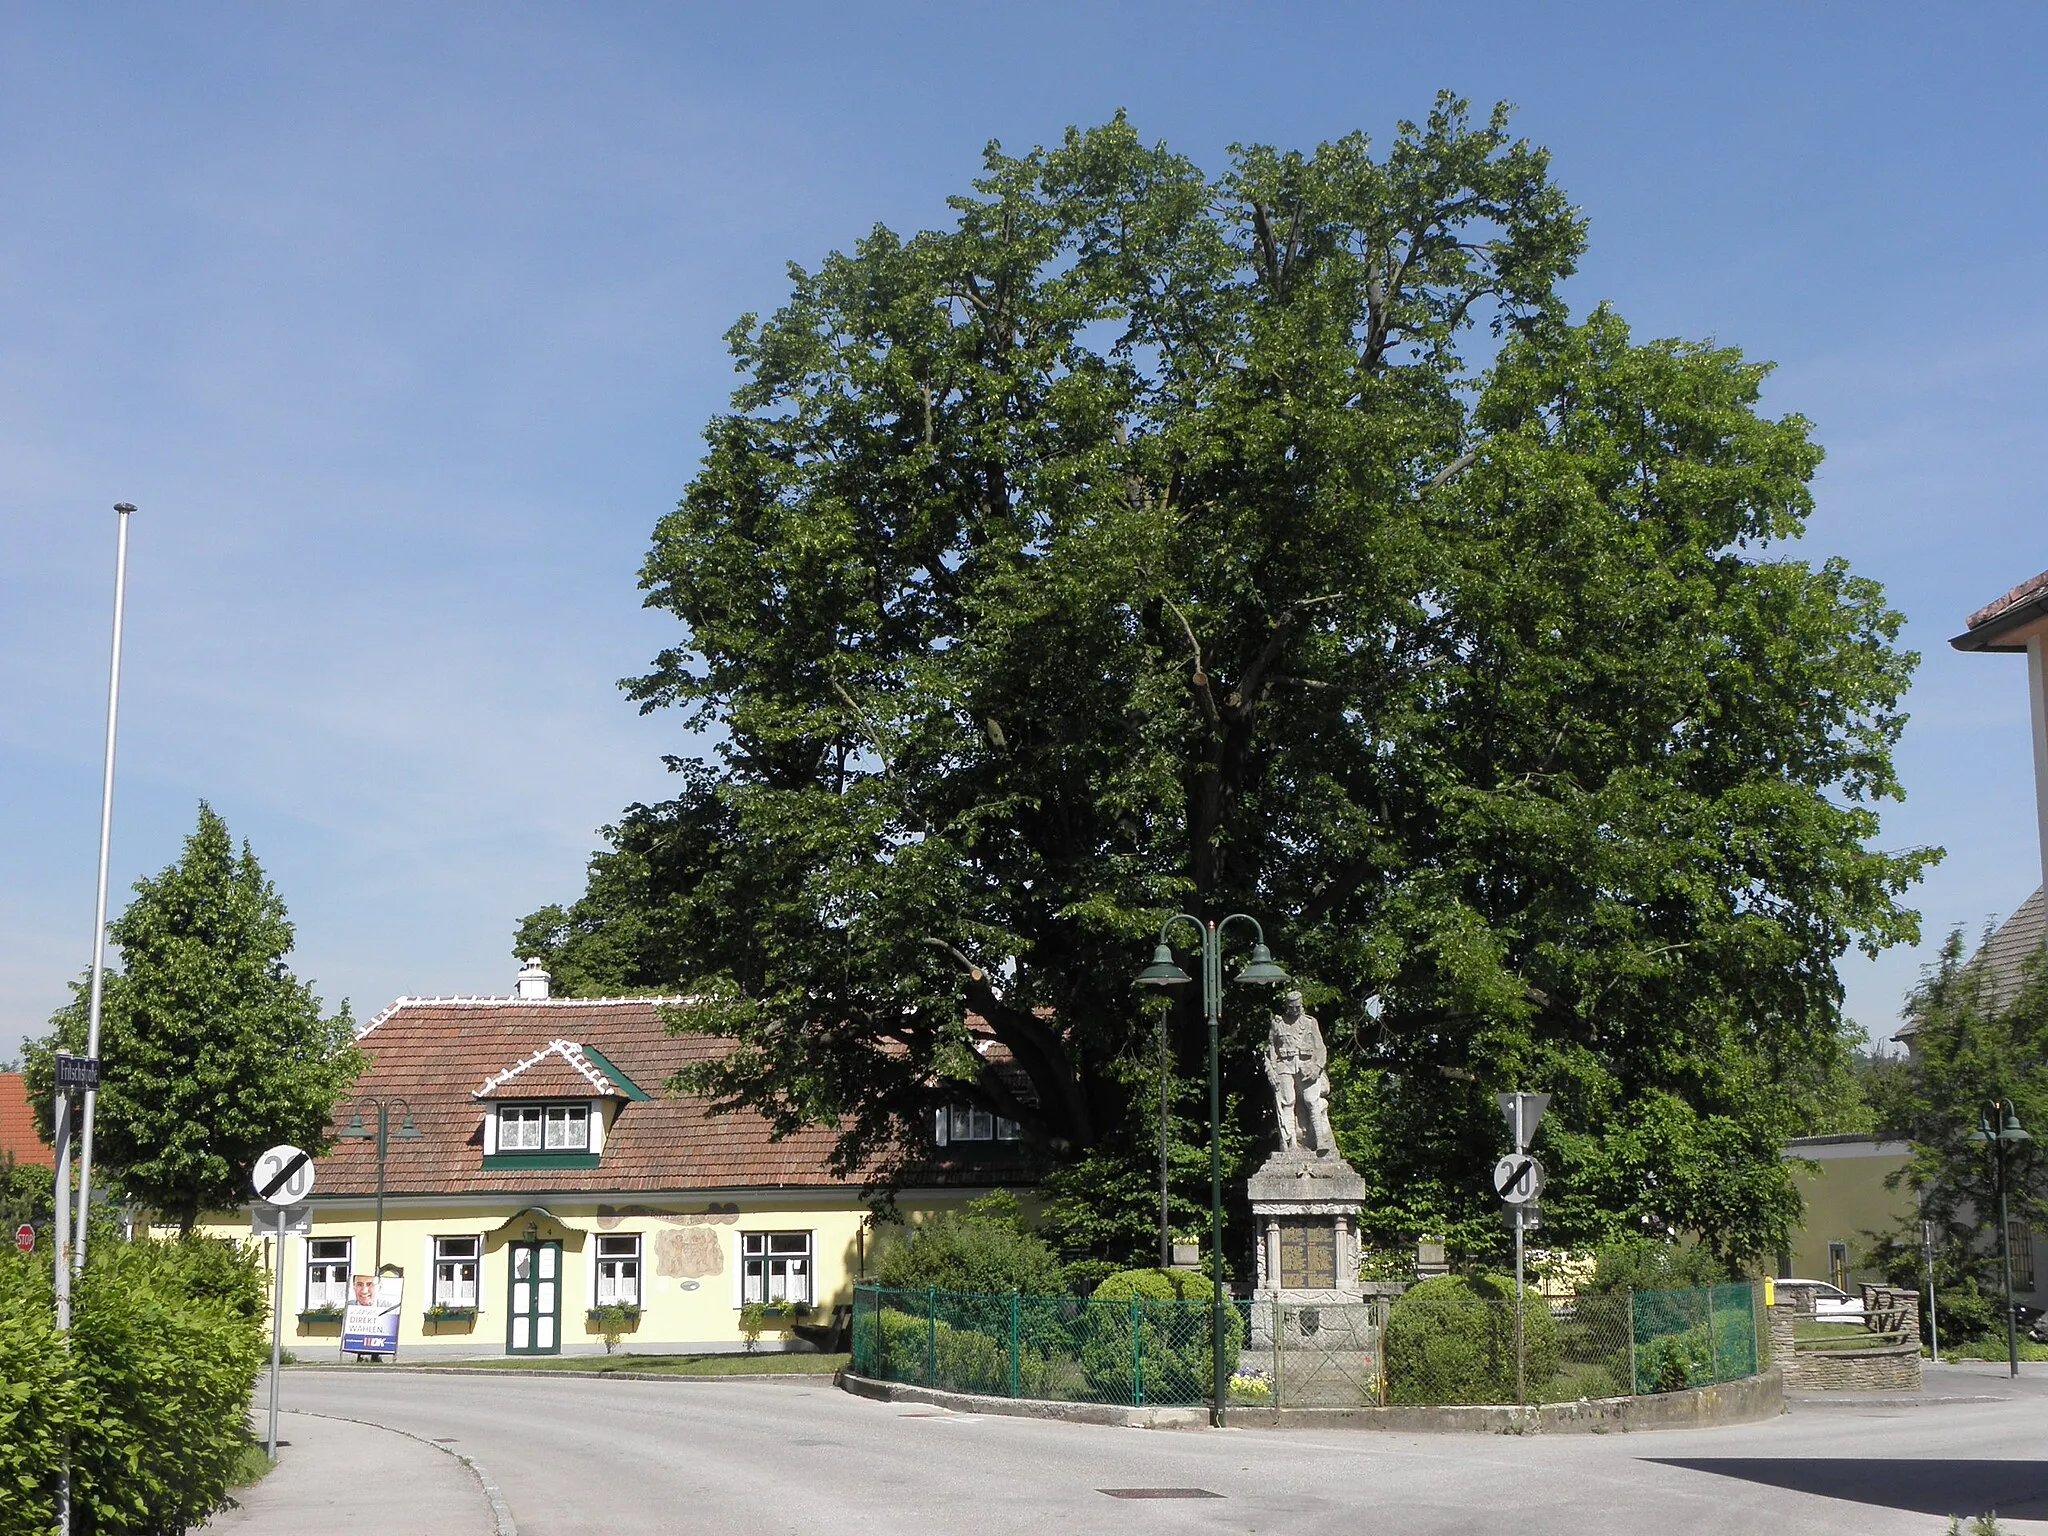 Image of Niederösterreich